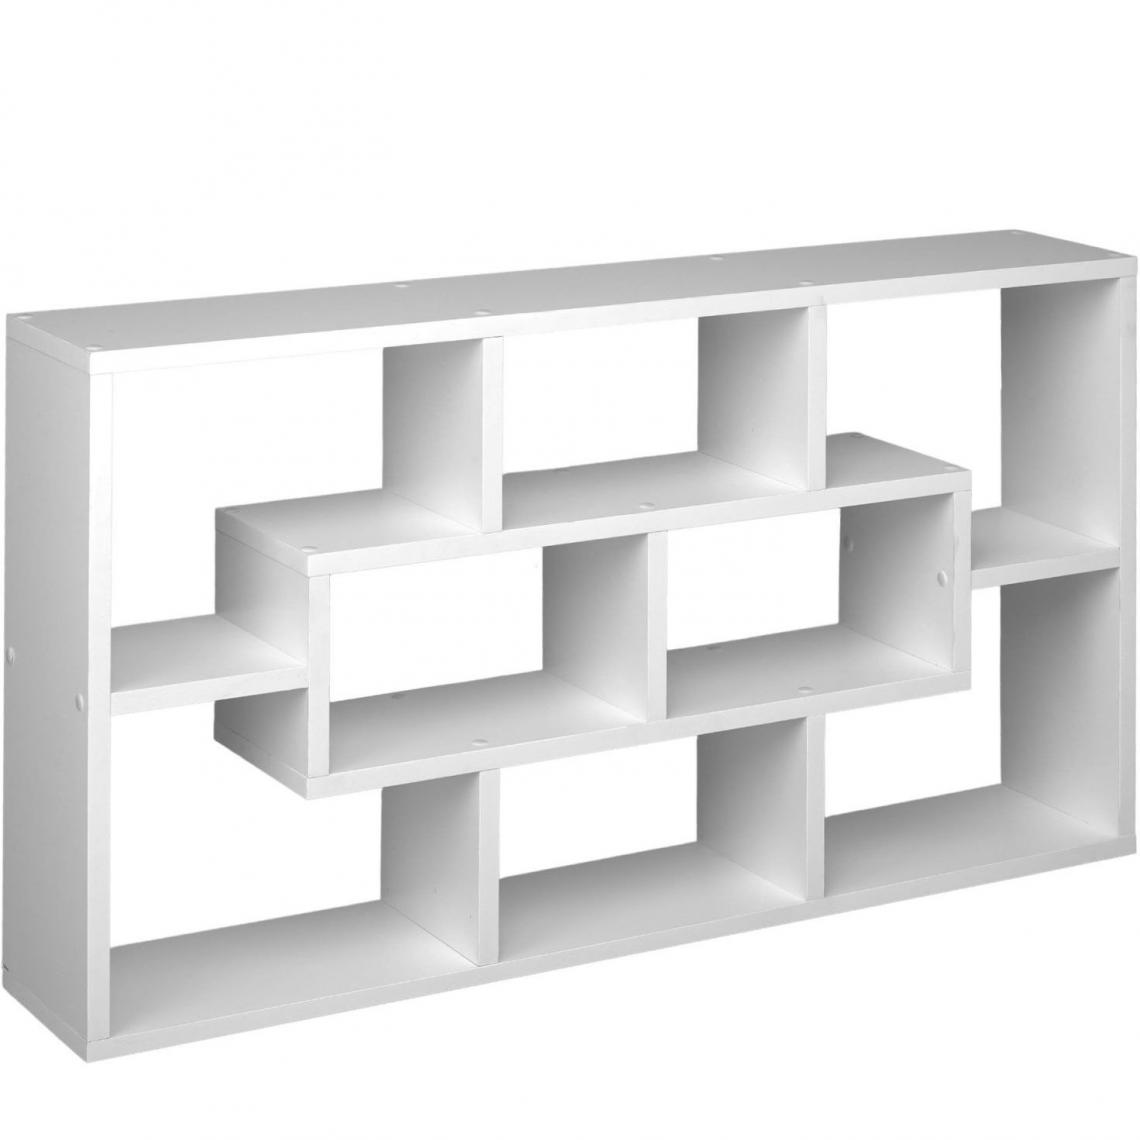 Helloshop26 - Étagère armoire meuble de rangement bibliothèque murale 8 compartiments 85 cm blanc 08_0000284 - Etagères